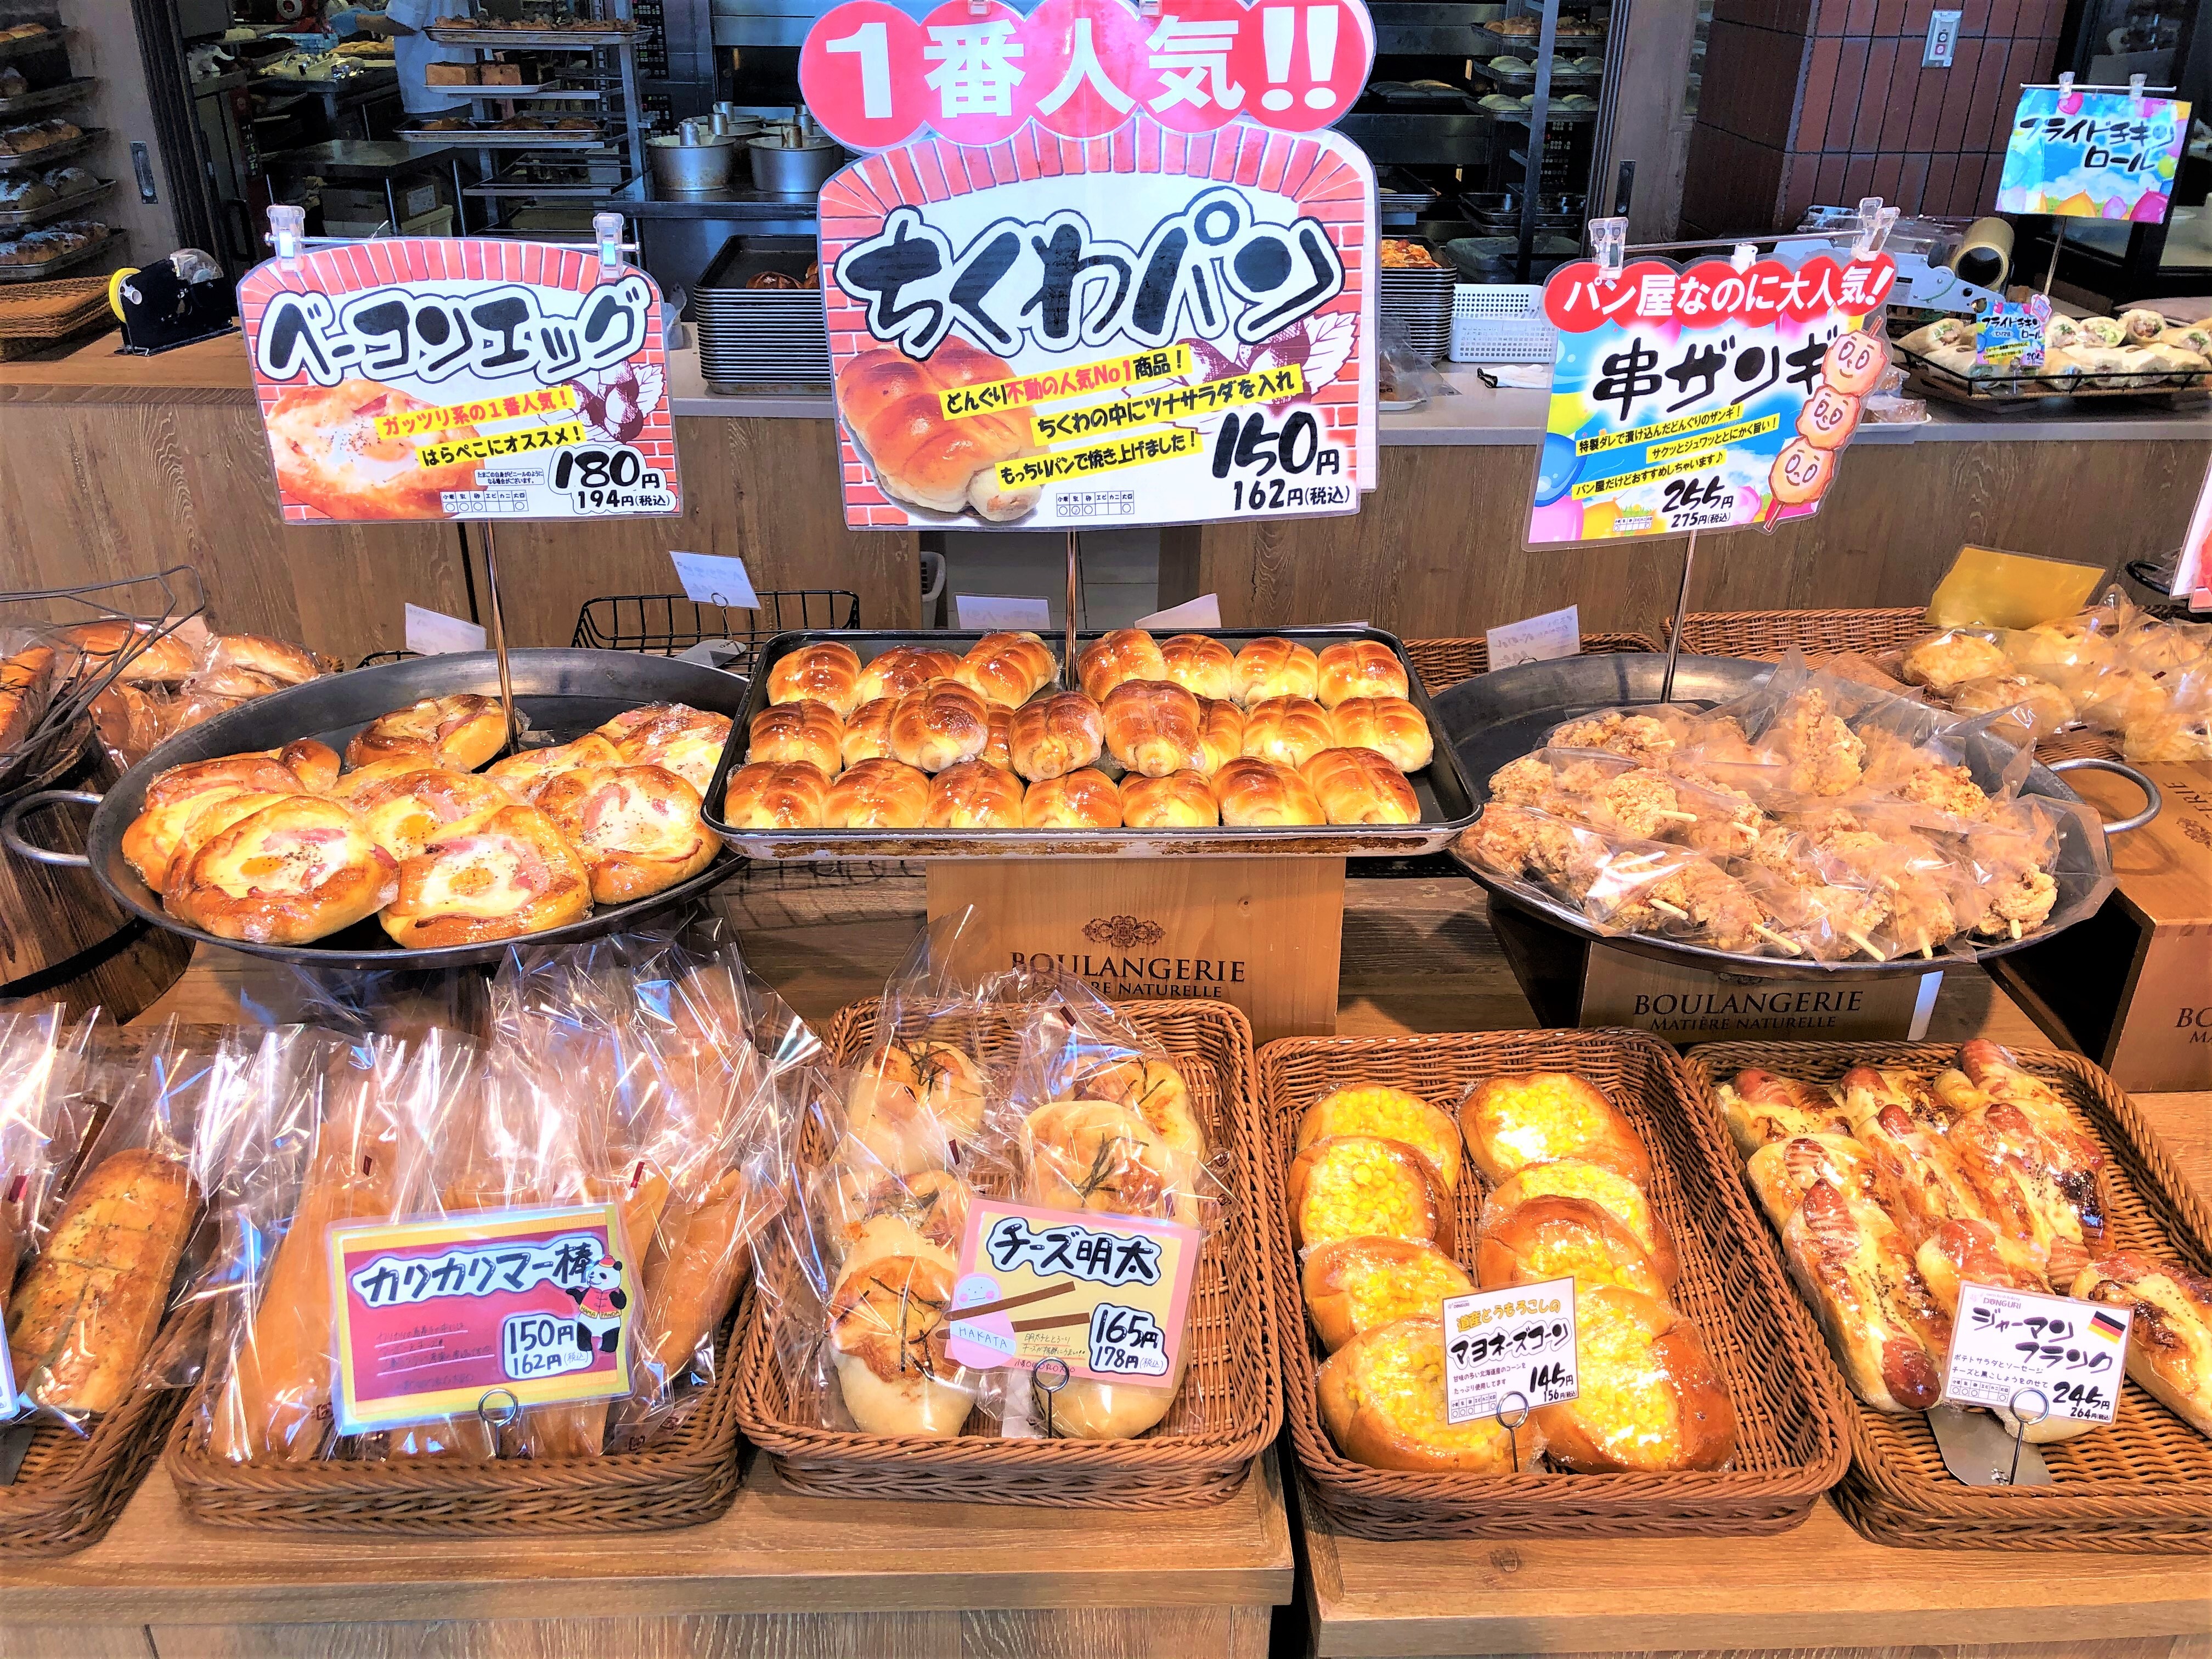 もったいない 山鼻店 セット 18個入 税込 送料別 札幌のパン屋 どんぐり 公式オンラインショップ